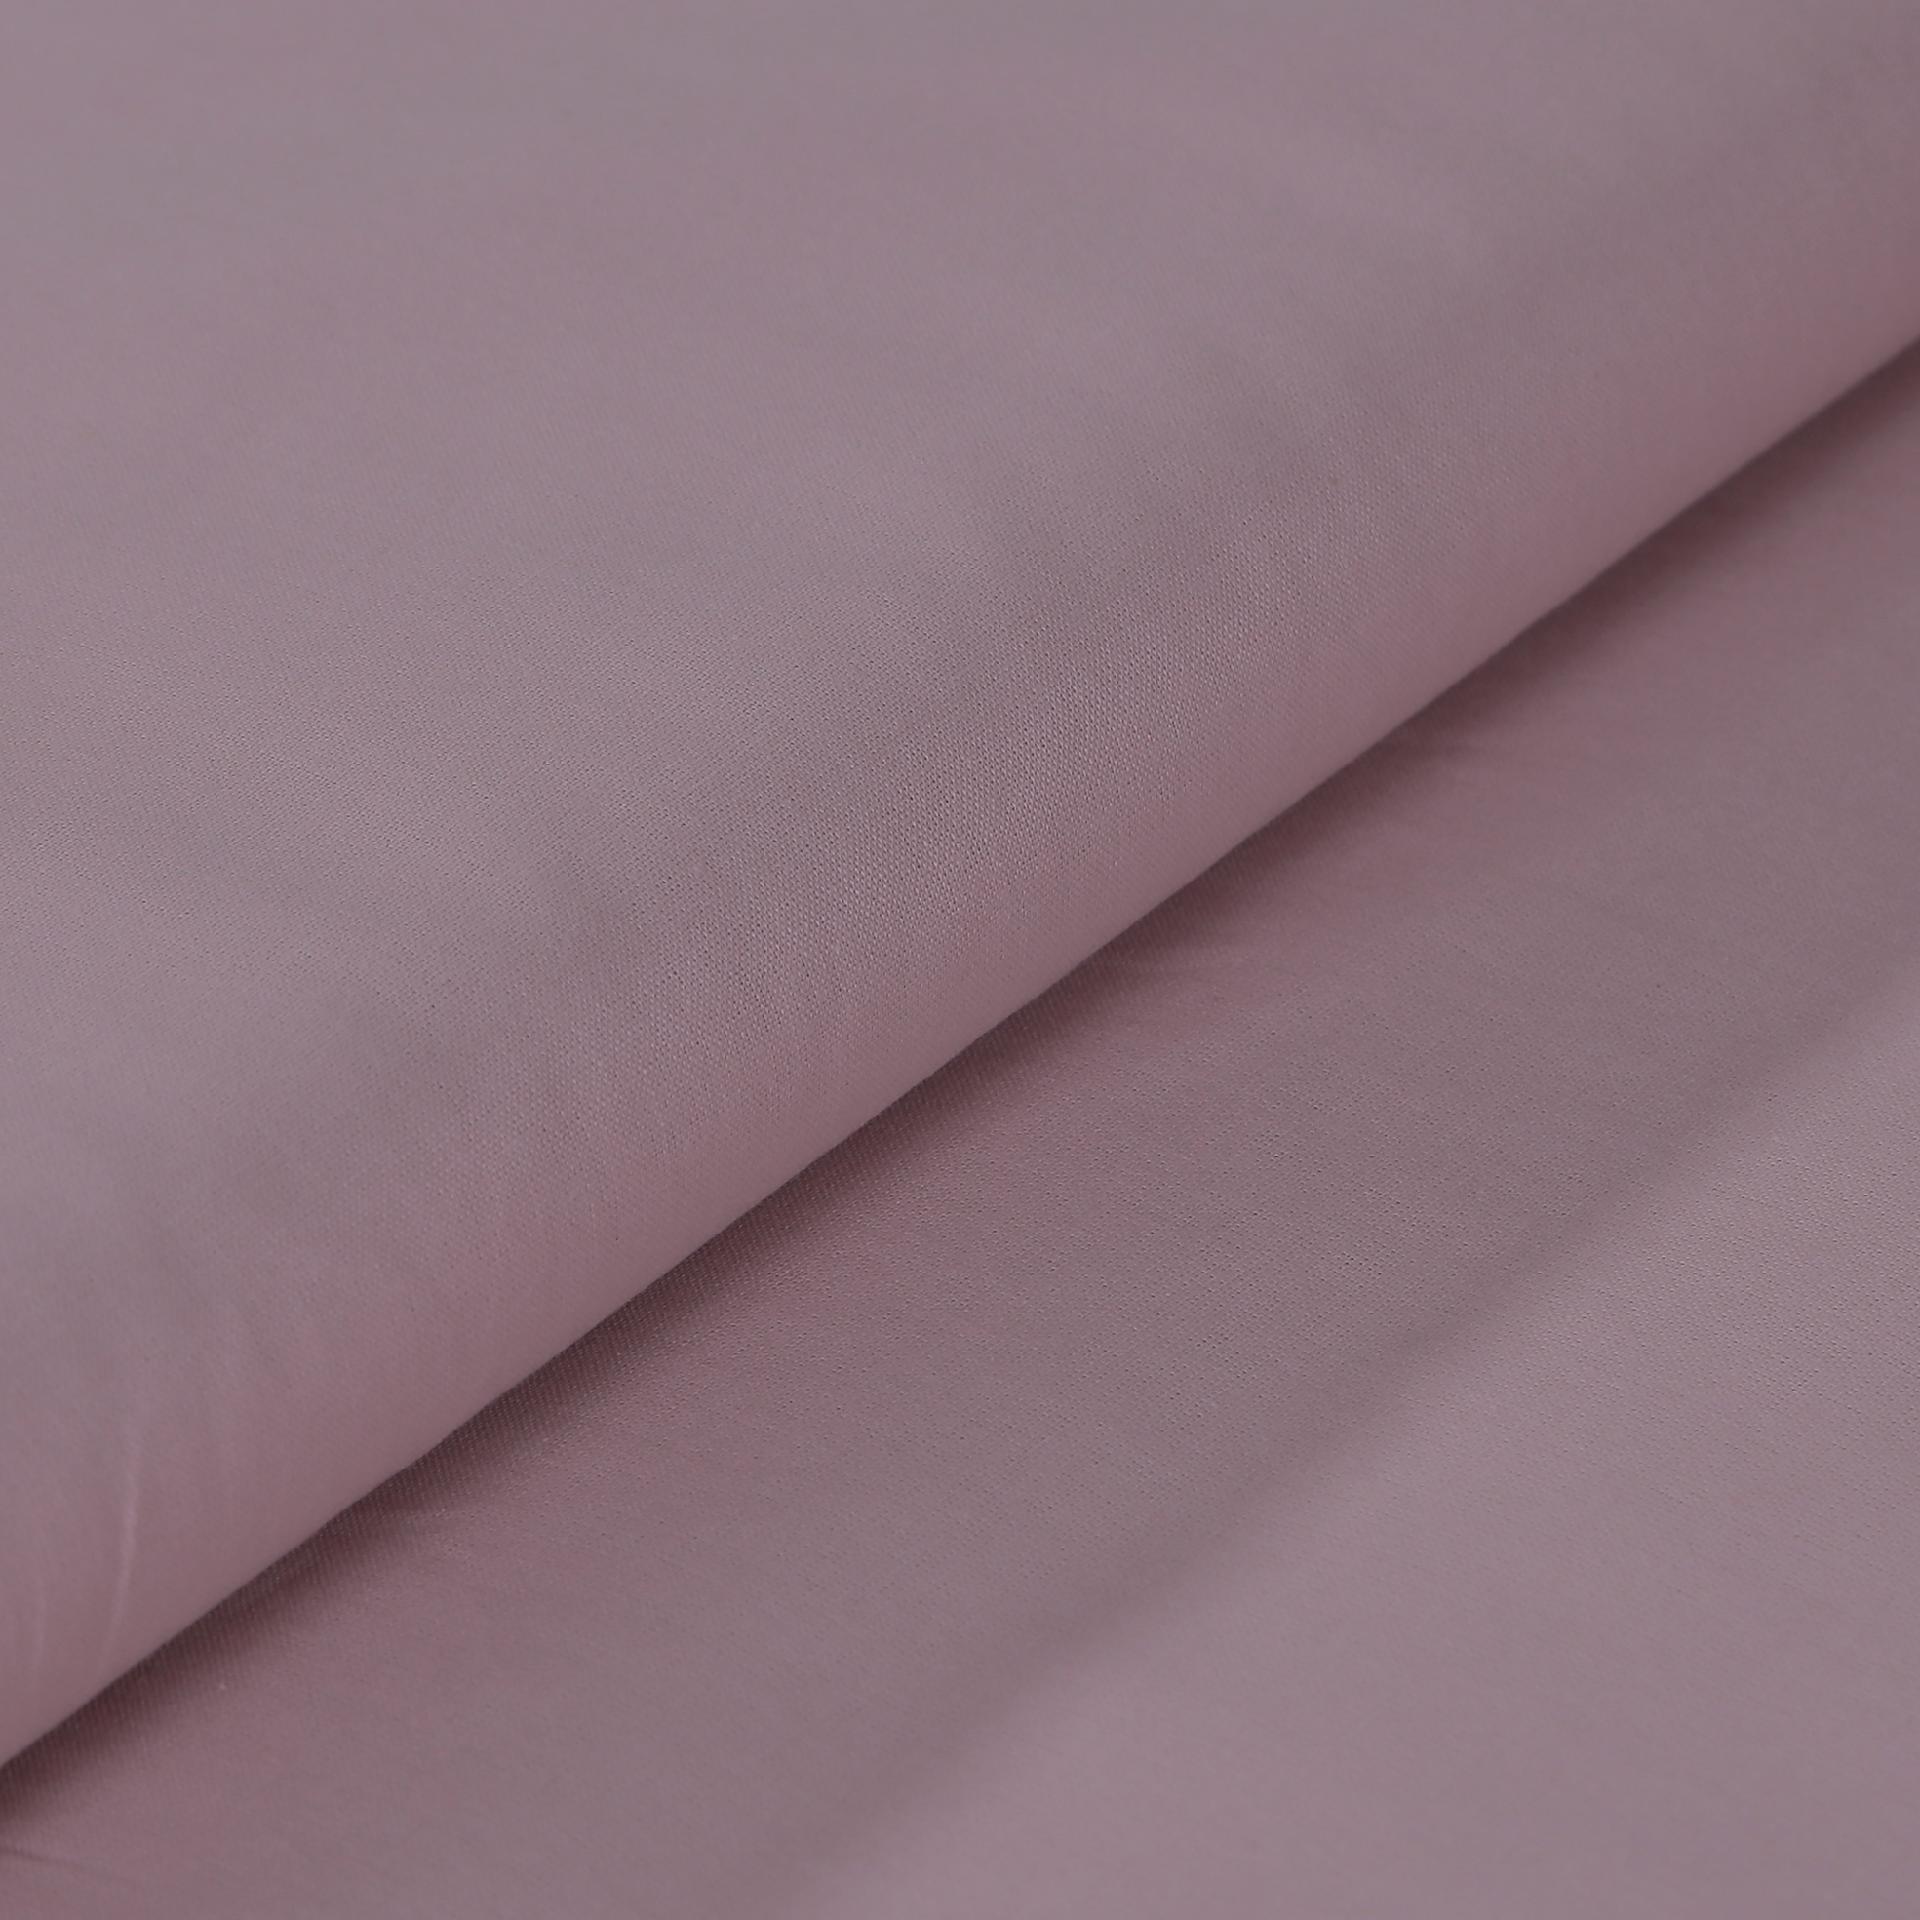 Tessuto Stoffa in cotone in tinta unica colore rosa antico stafil altezza  140 cm x 50cm stoffe - Bagheria (Palermo)